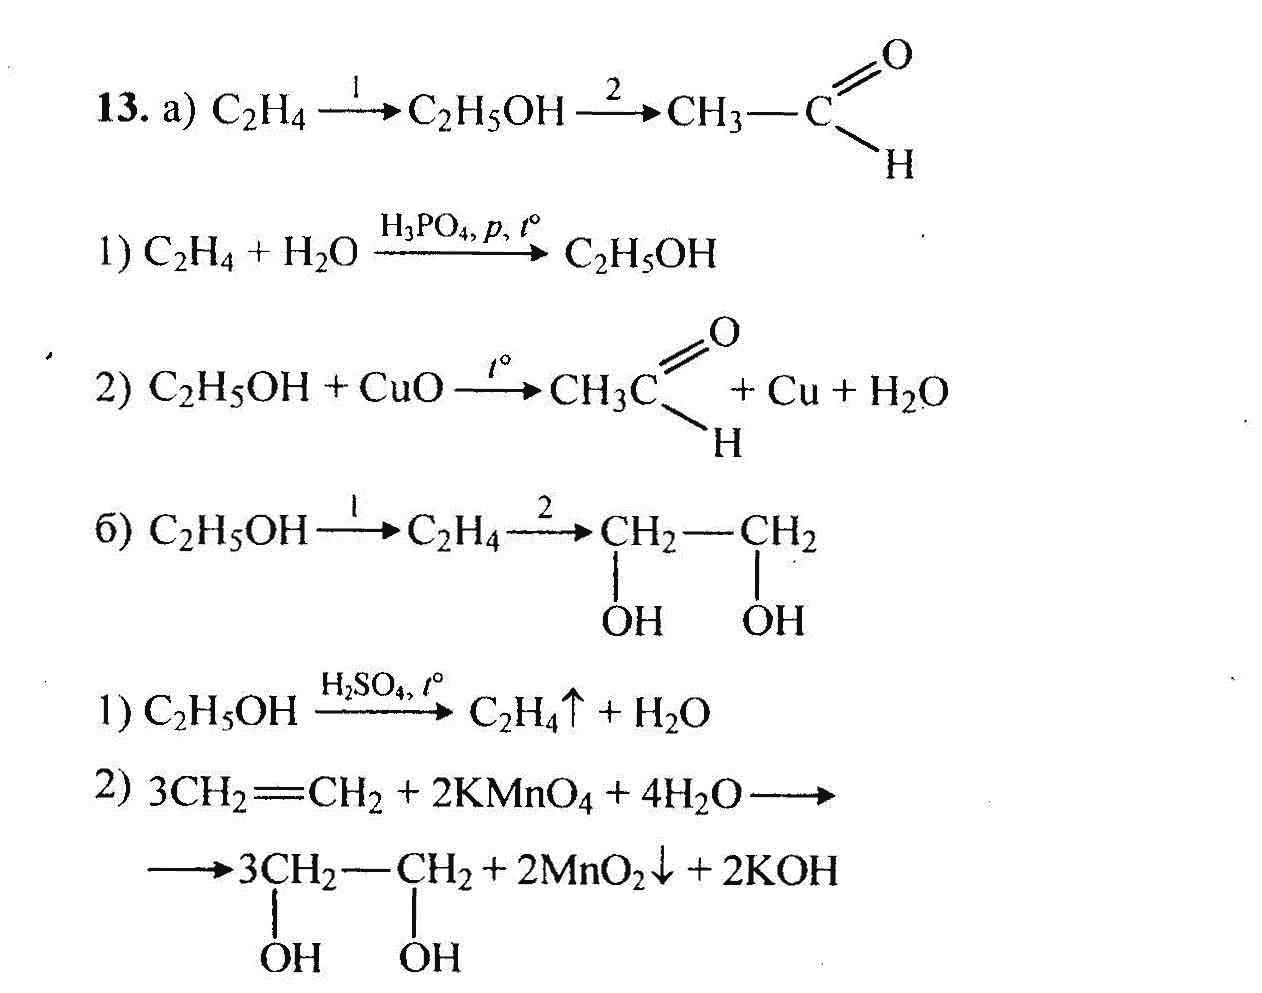 Метан ацетилен этаналь этановая кислота. Этаналь уравнение реакции. Реакция превращения этилена в этиленгликоль. Этилен этанол этаналь.